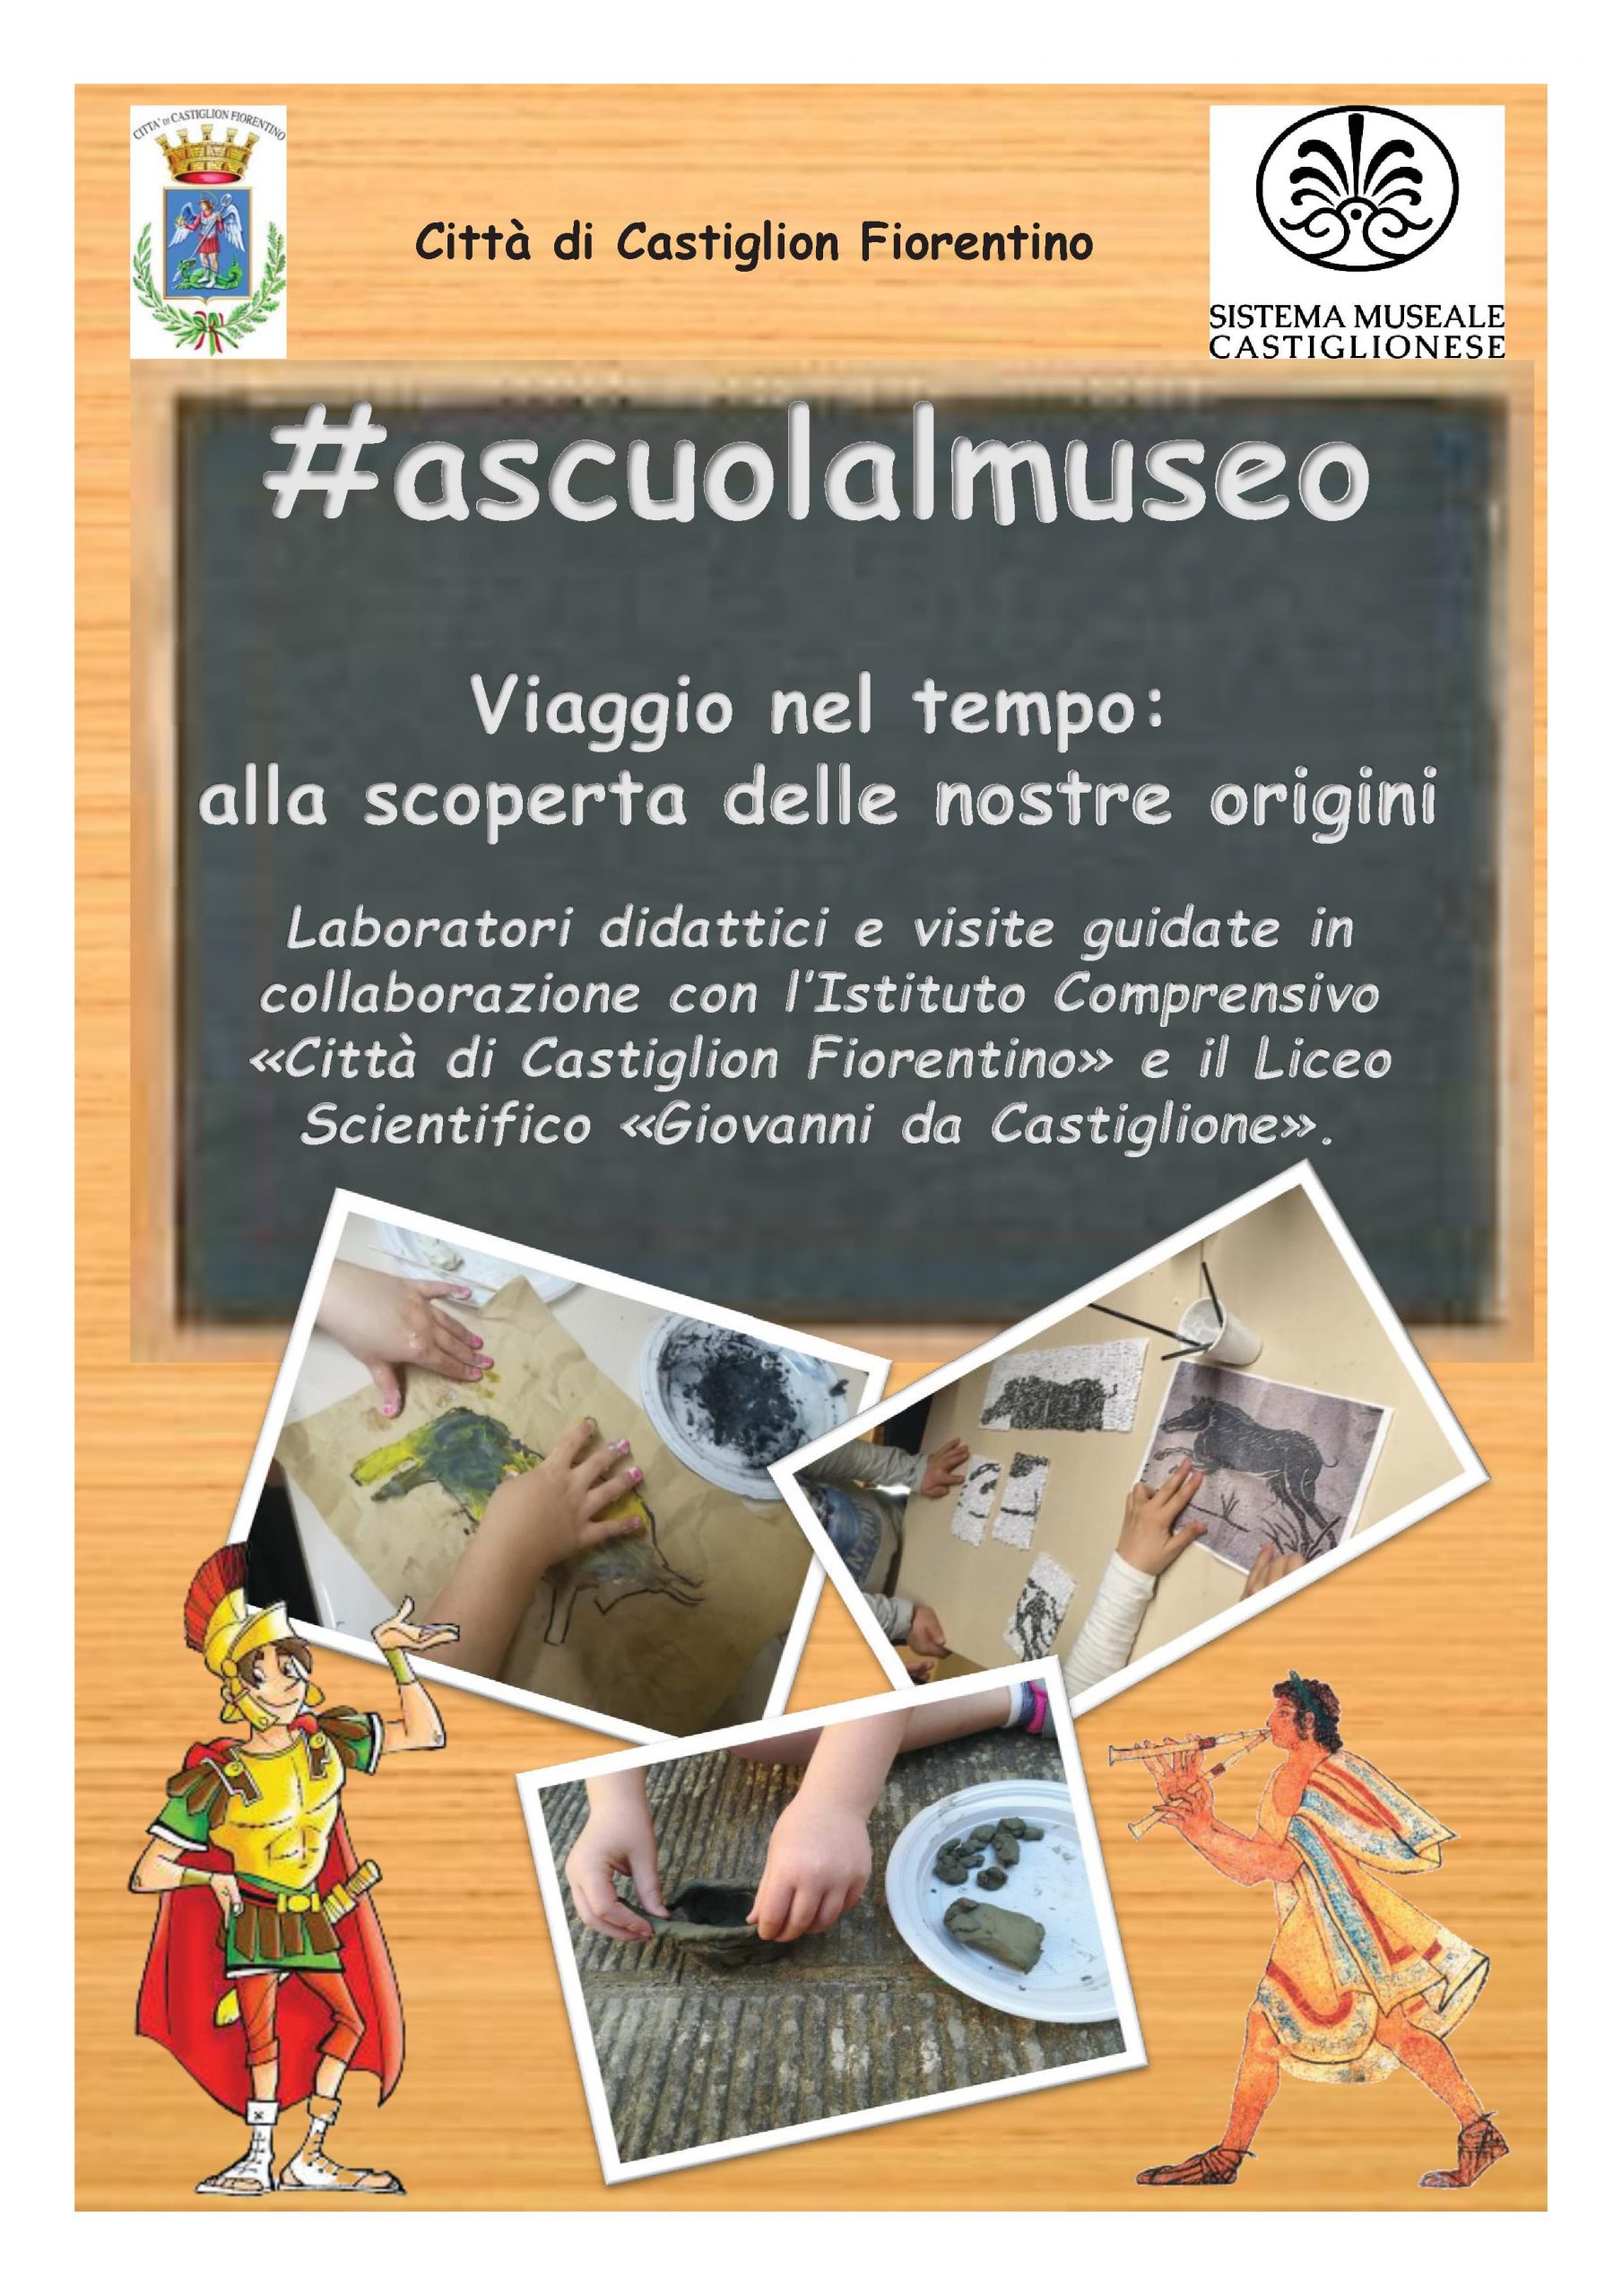 #ascuolalmuseo, da lunedì 27 il primo di una lunga serie d’incontri al Museo Civico Archeologico